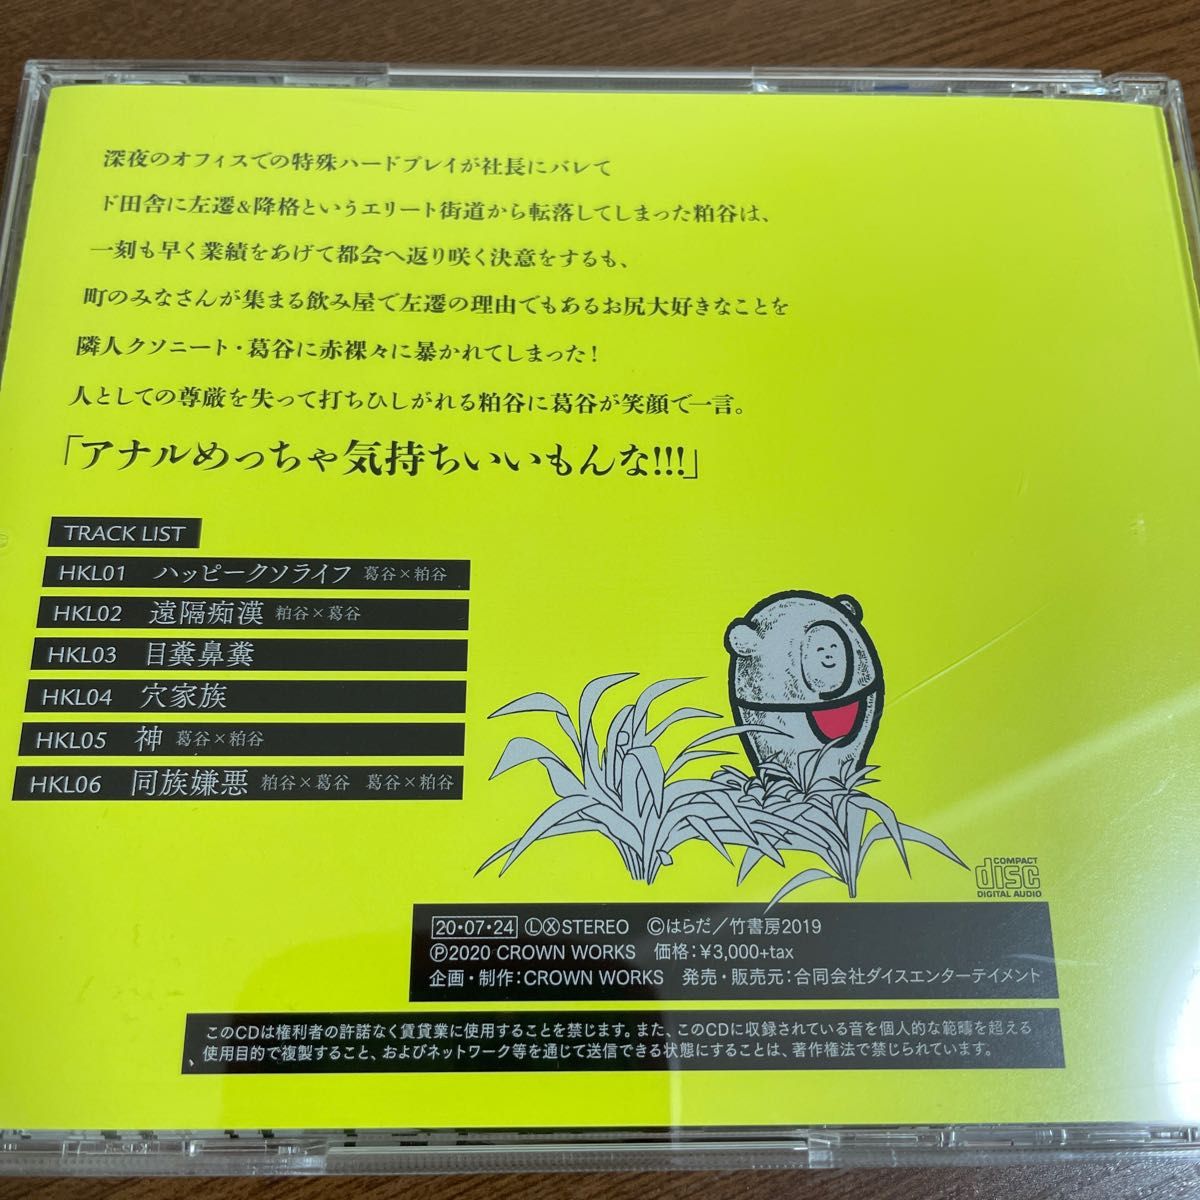 ハッピークソライフ CD